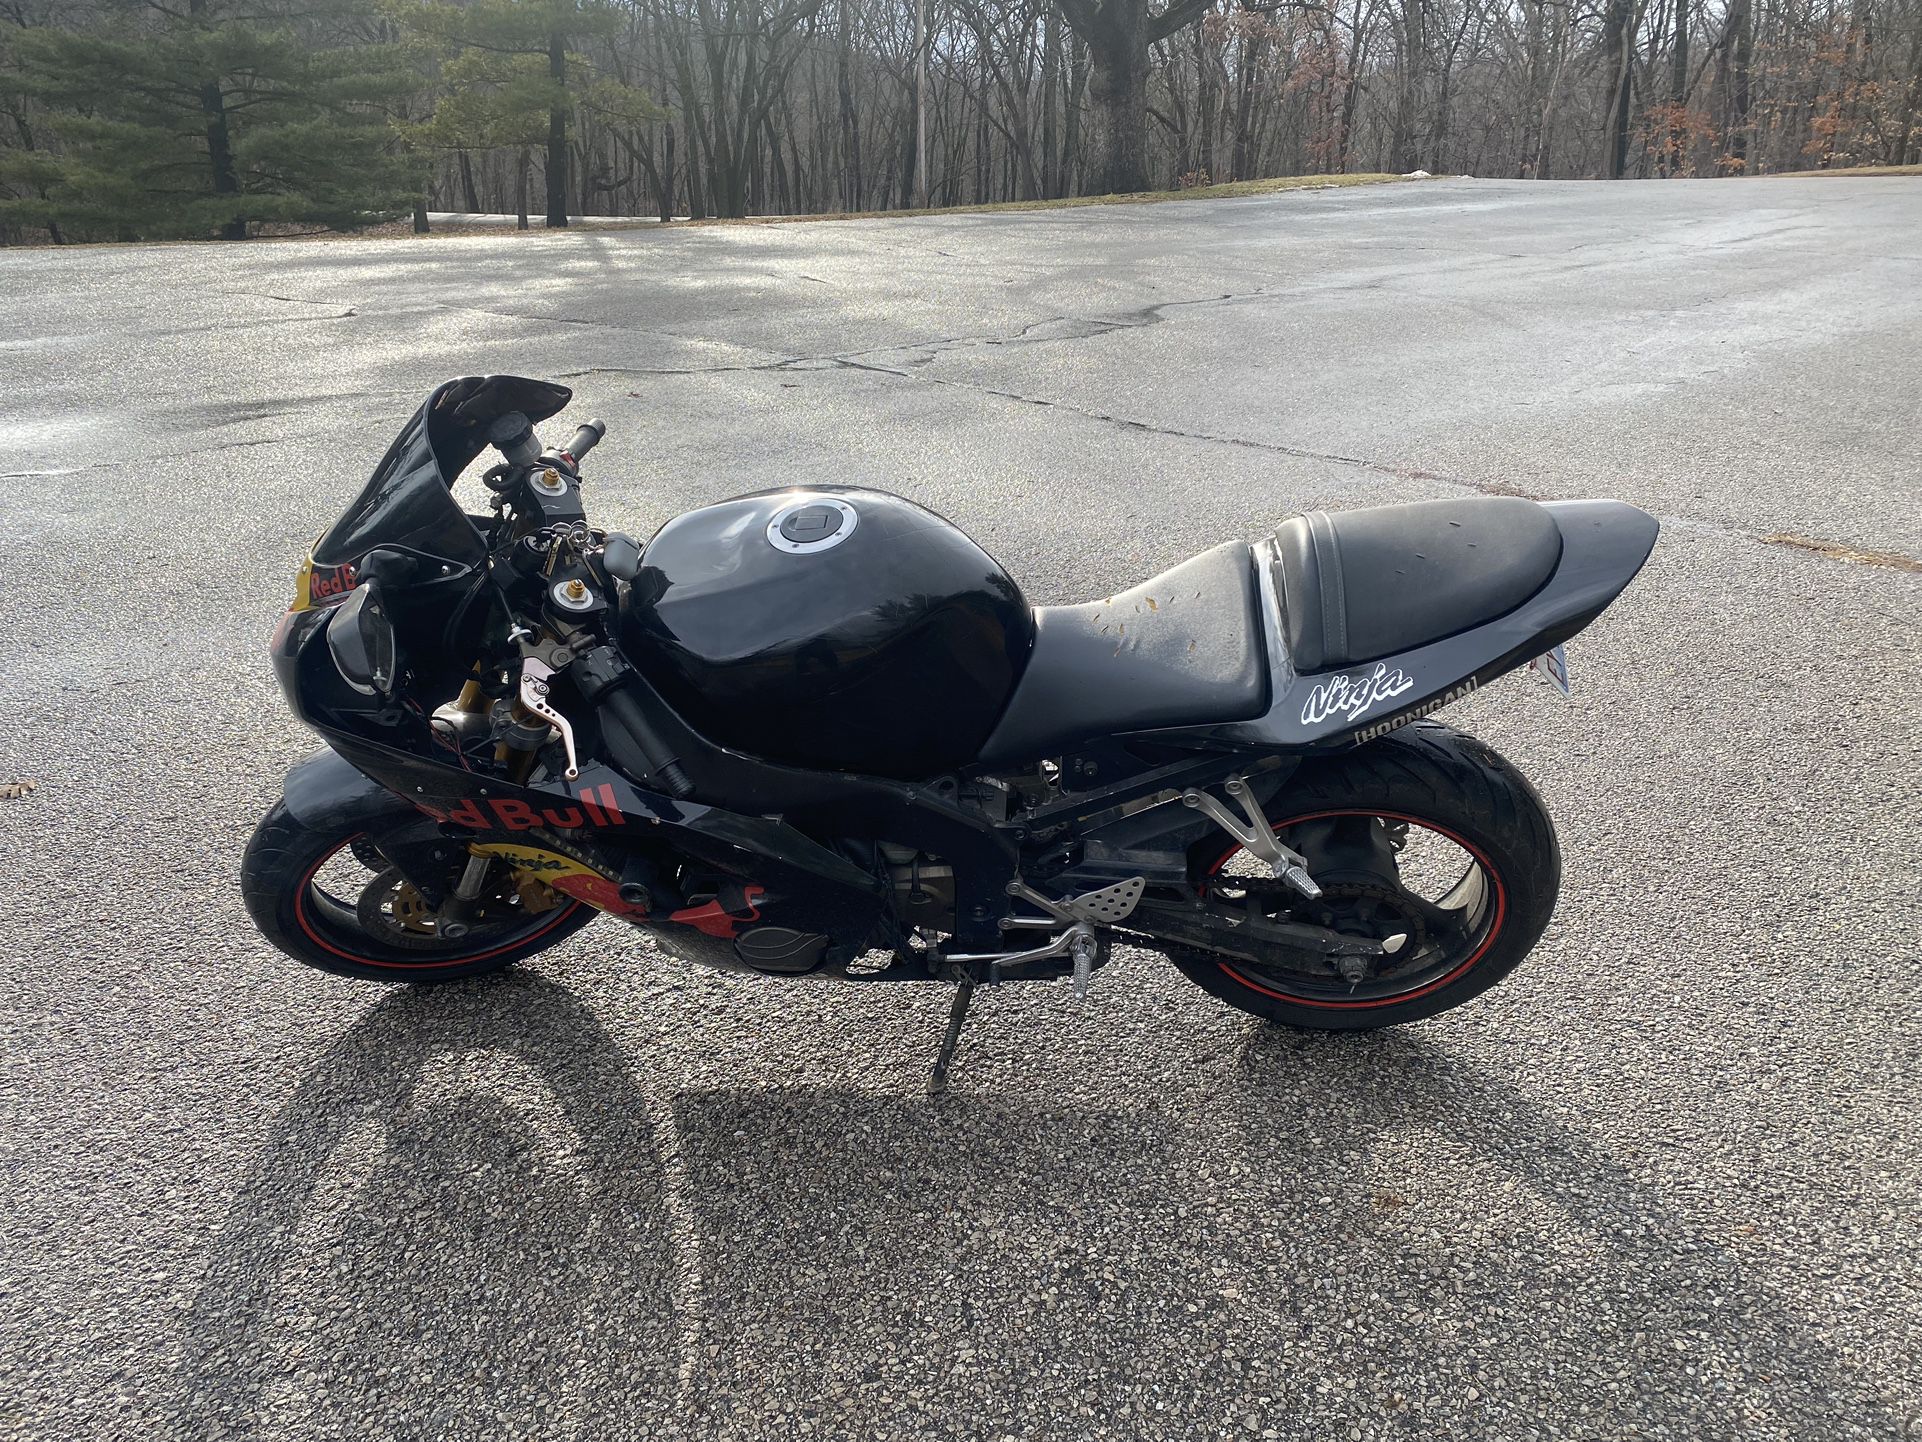 Kawasaki Ninja 636 Motorcycle With Helmet 